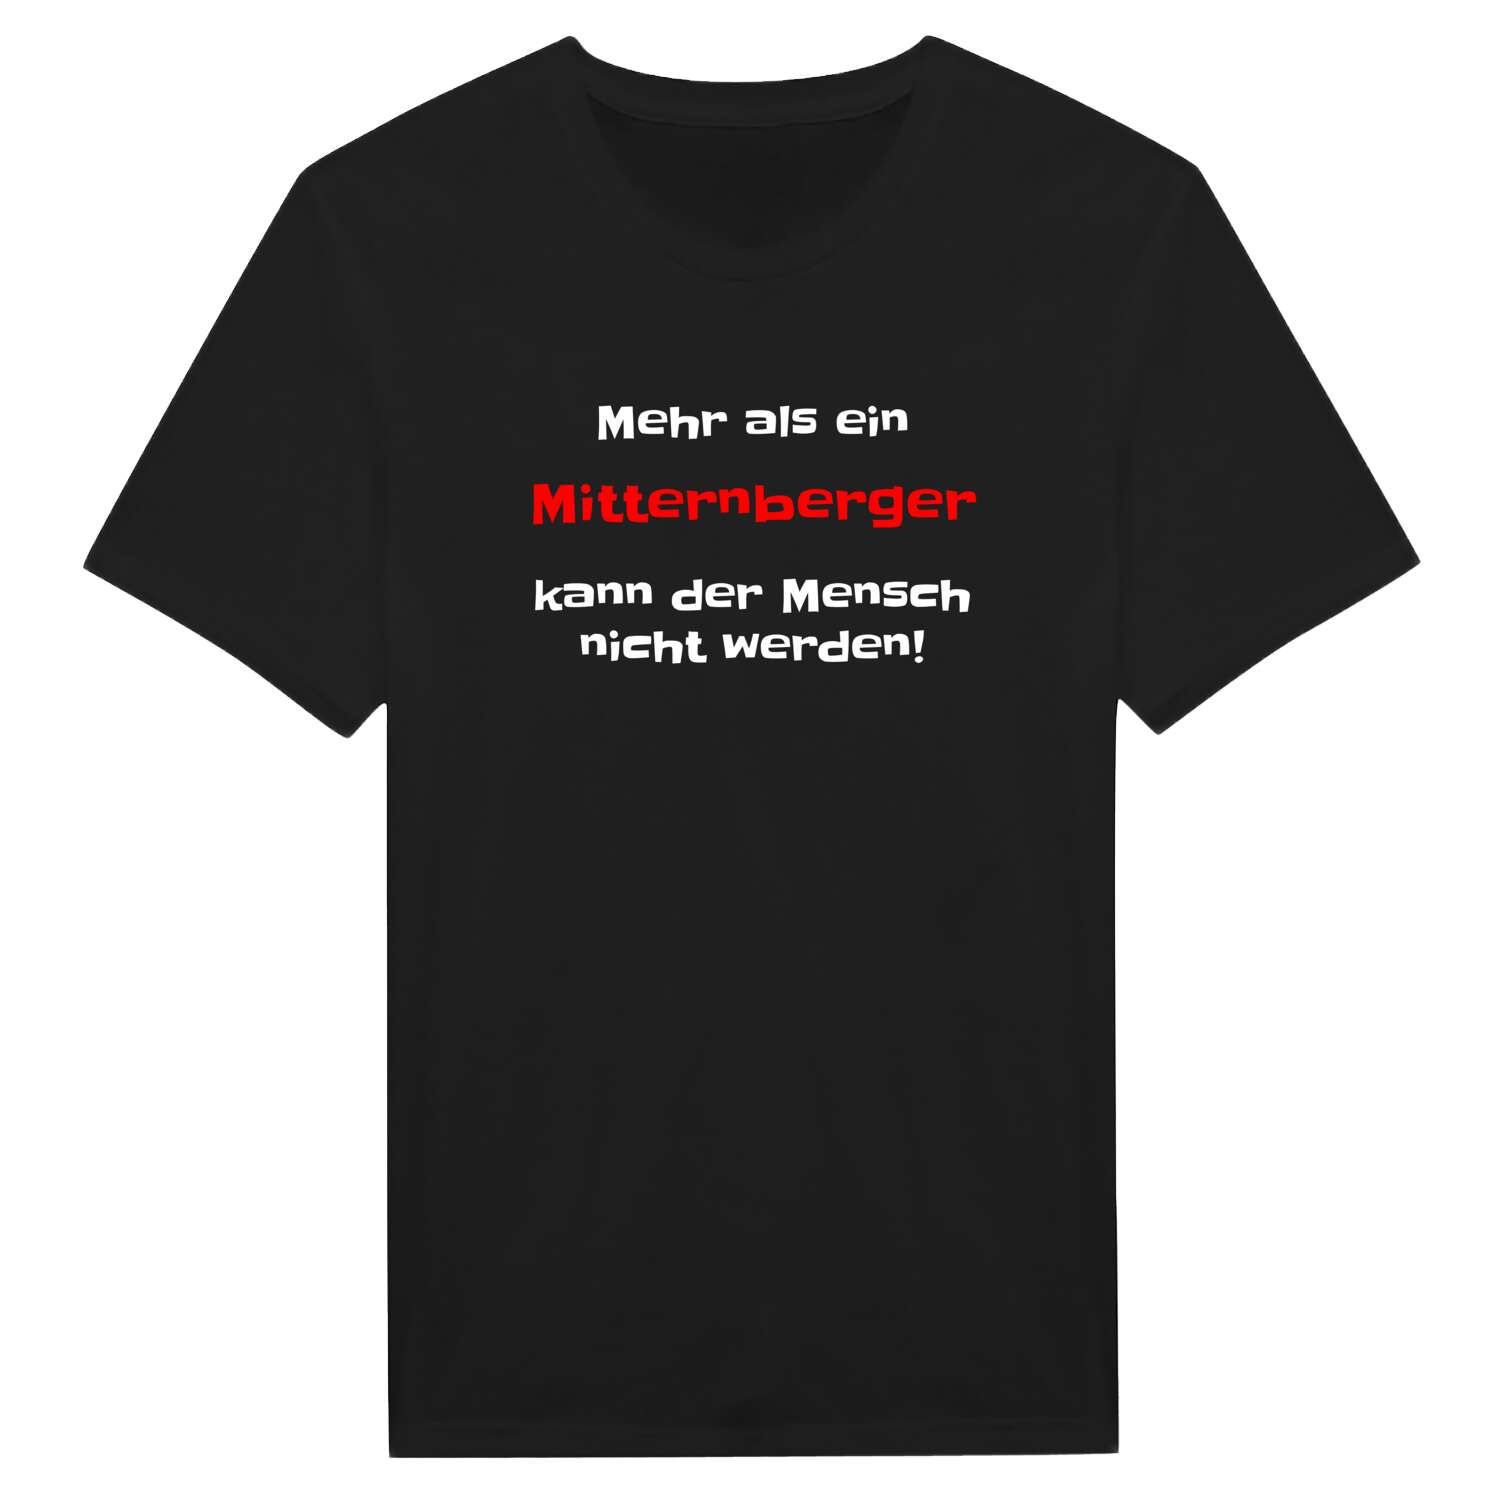 Mitternberg T-Shirt »Mehr als ein«